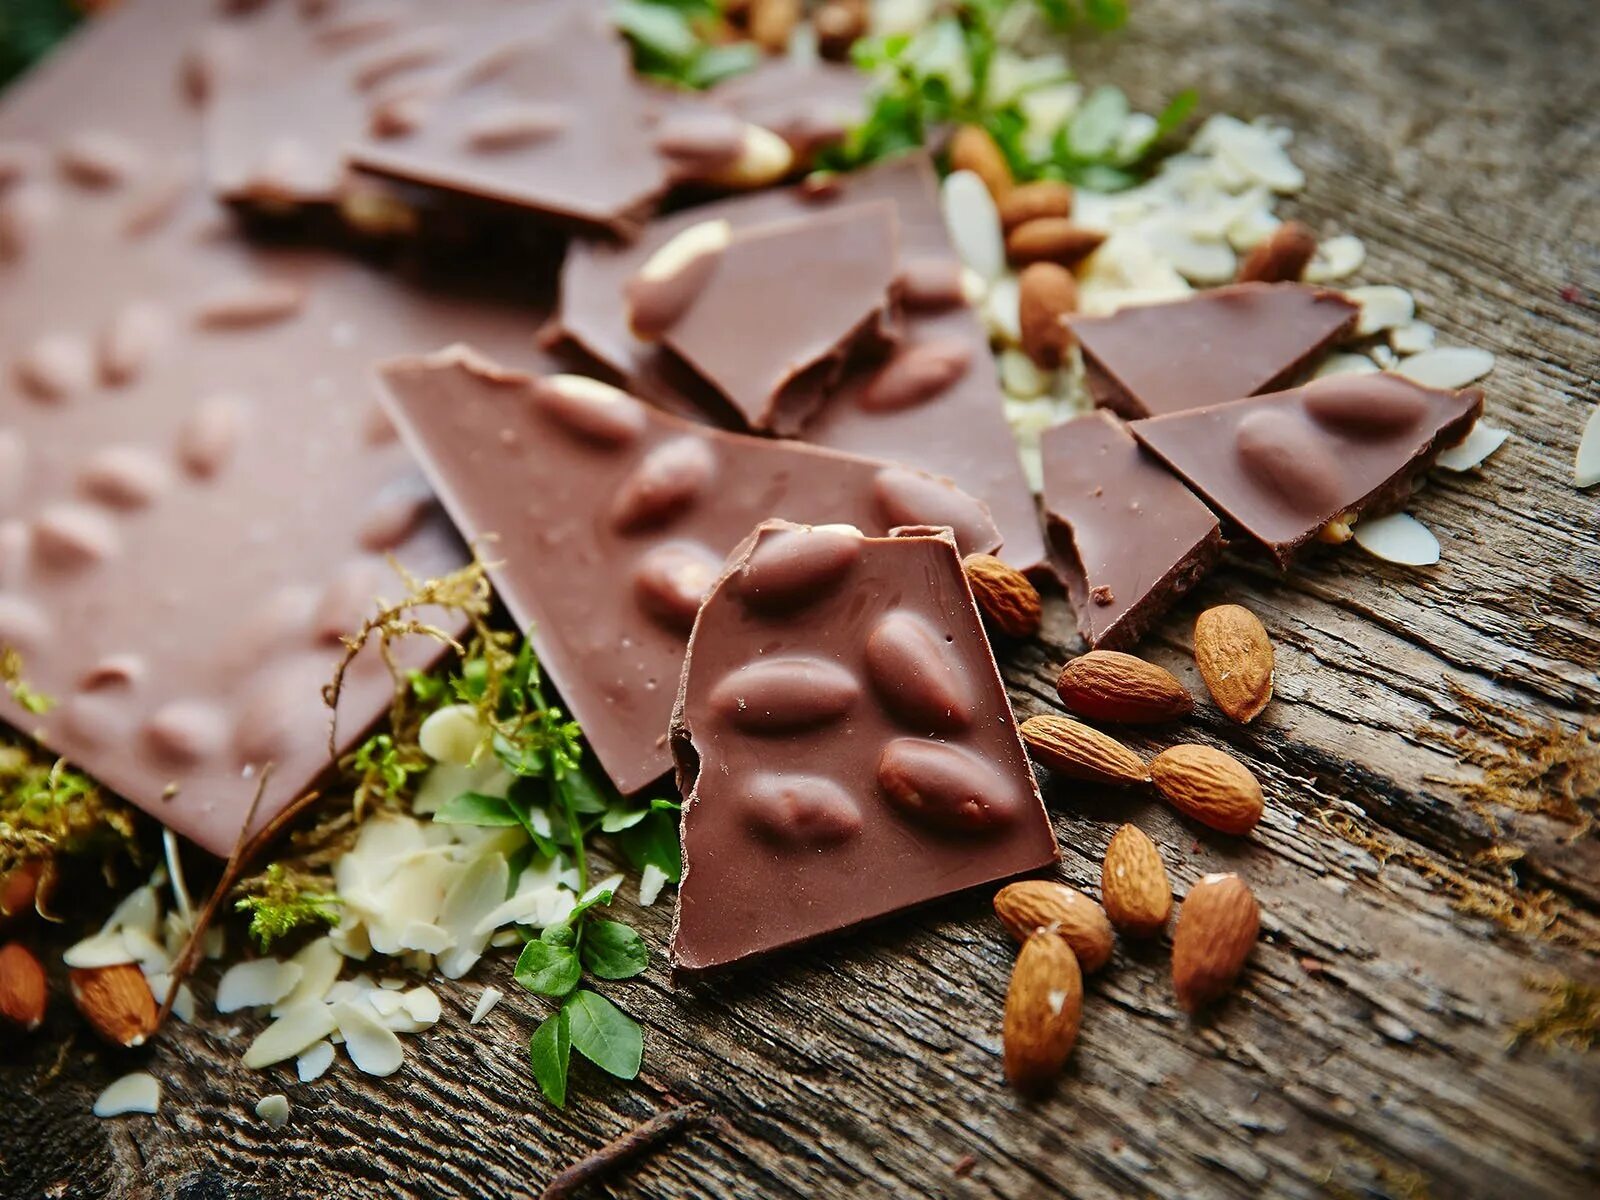 Бесплатный шоколад. Шоколад. Молочный шоколад. Плитка шоколада с орешками. Орешки в шоколаде.